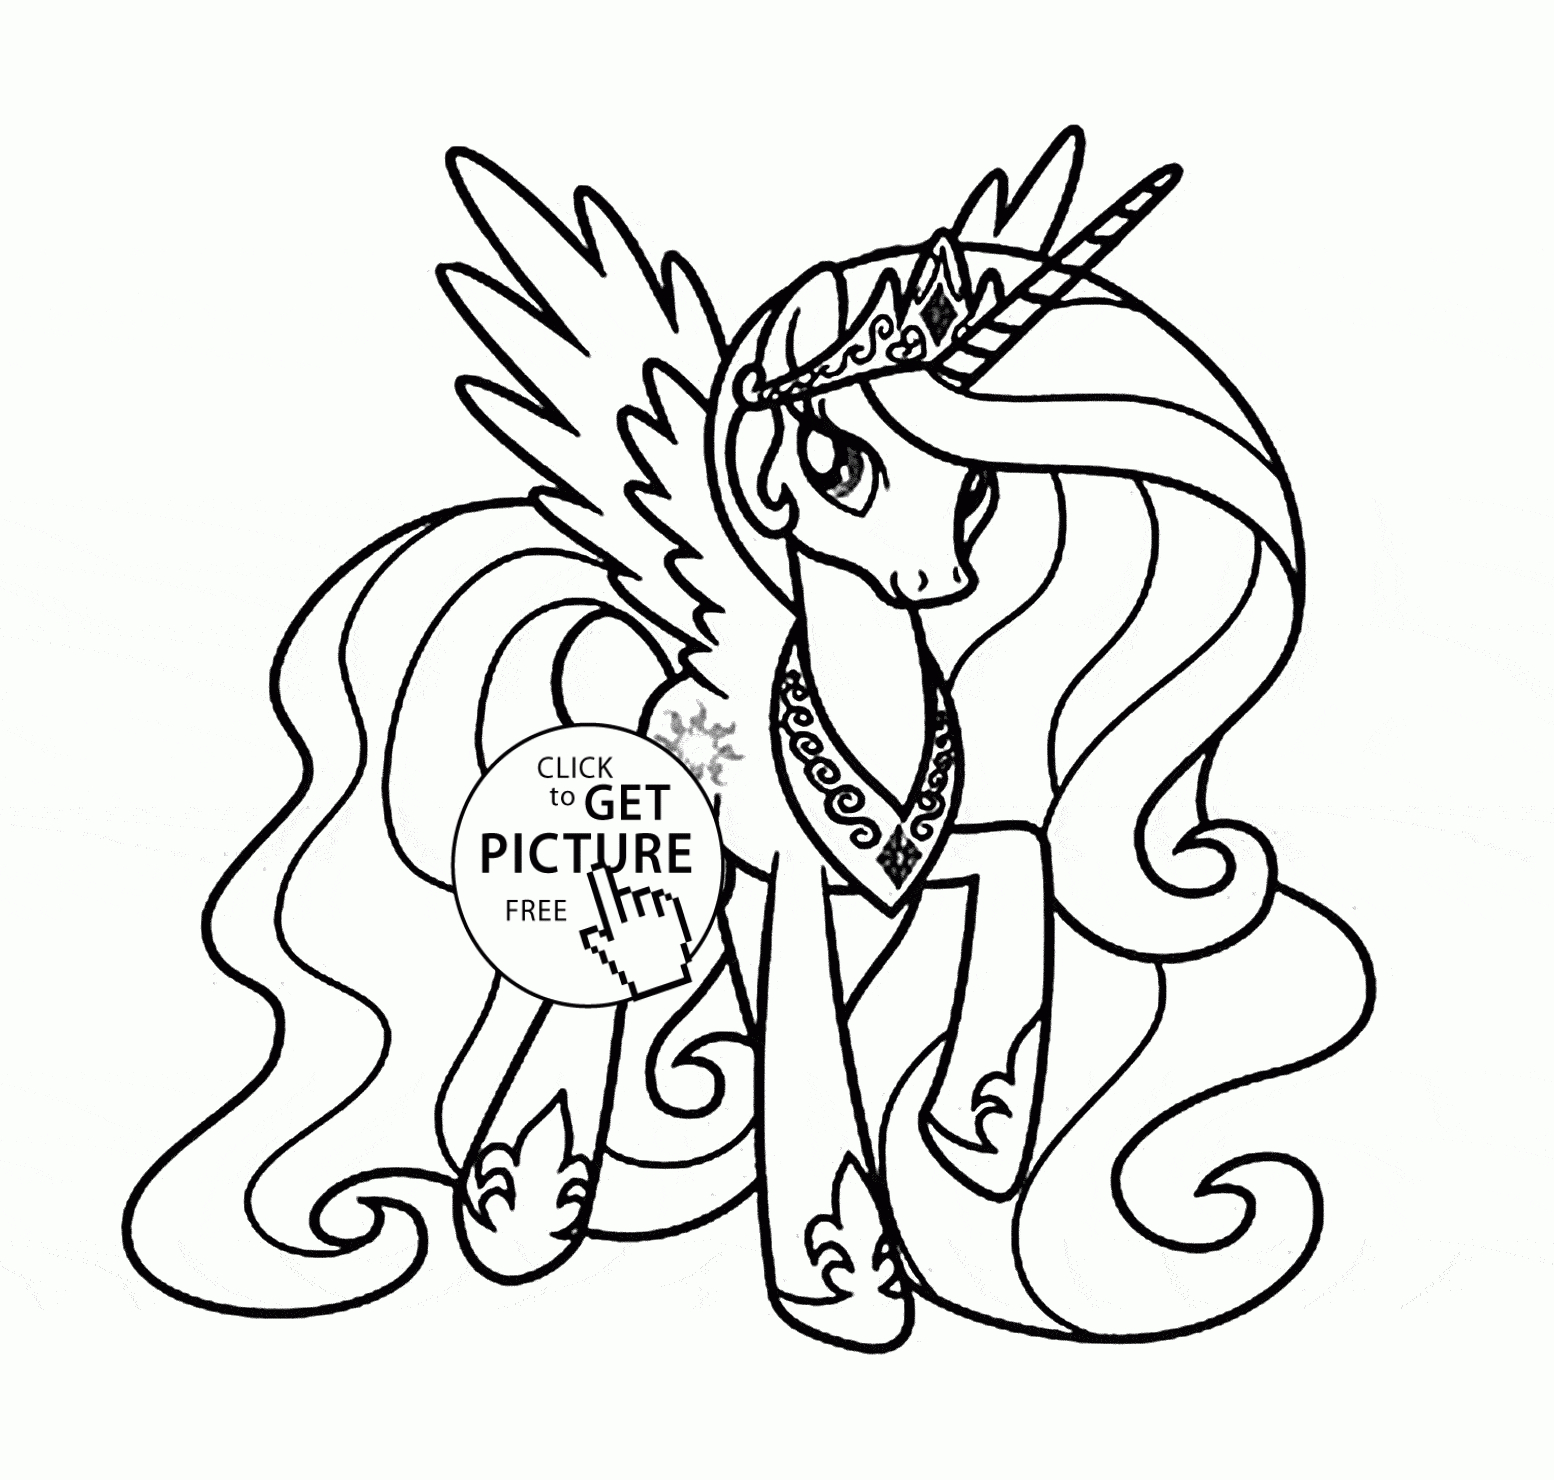 Princess Celestia - My Little Pony Coloring Page For Kids concernant Coloriage De My Little Pony Princesse Cadance